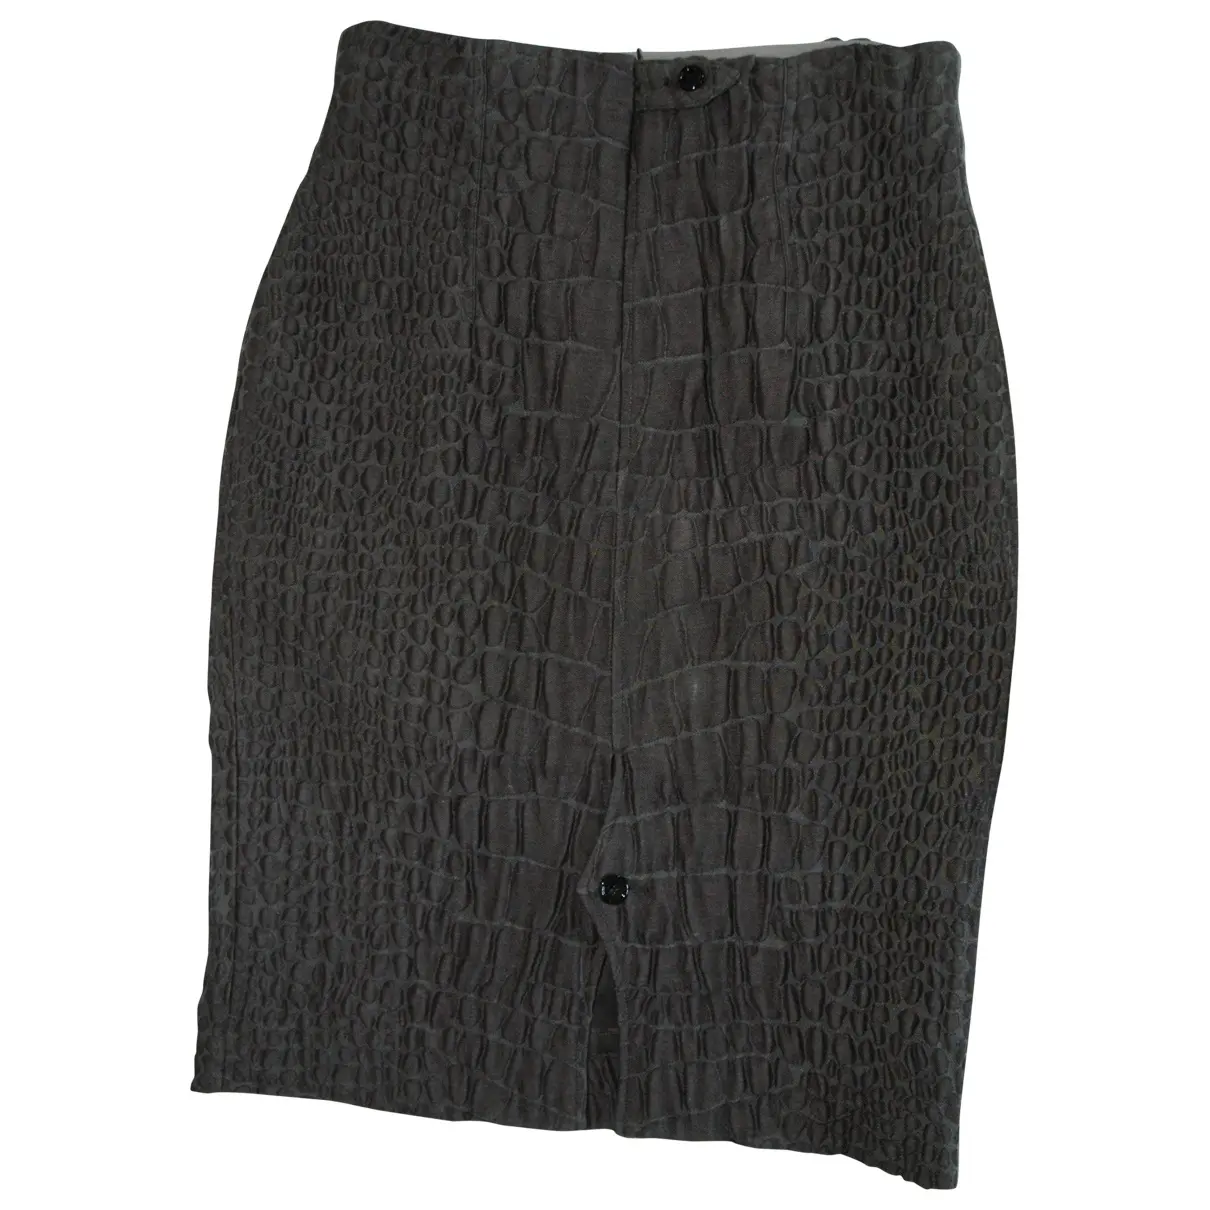 Yves Saint Laurent Skirt for sale - Vintage